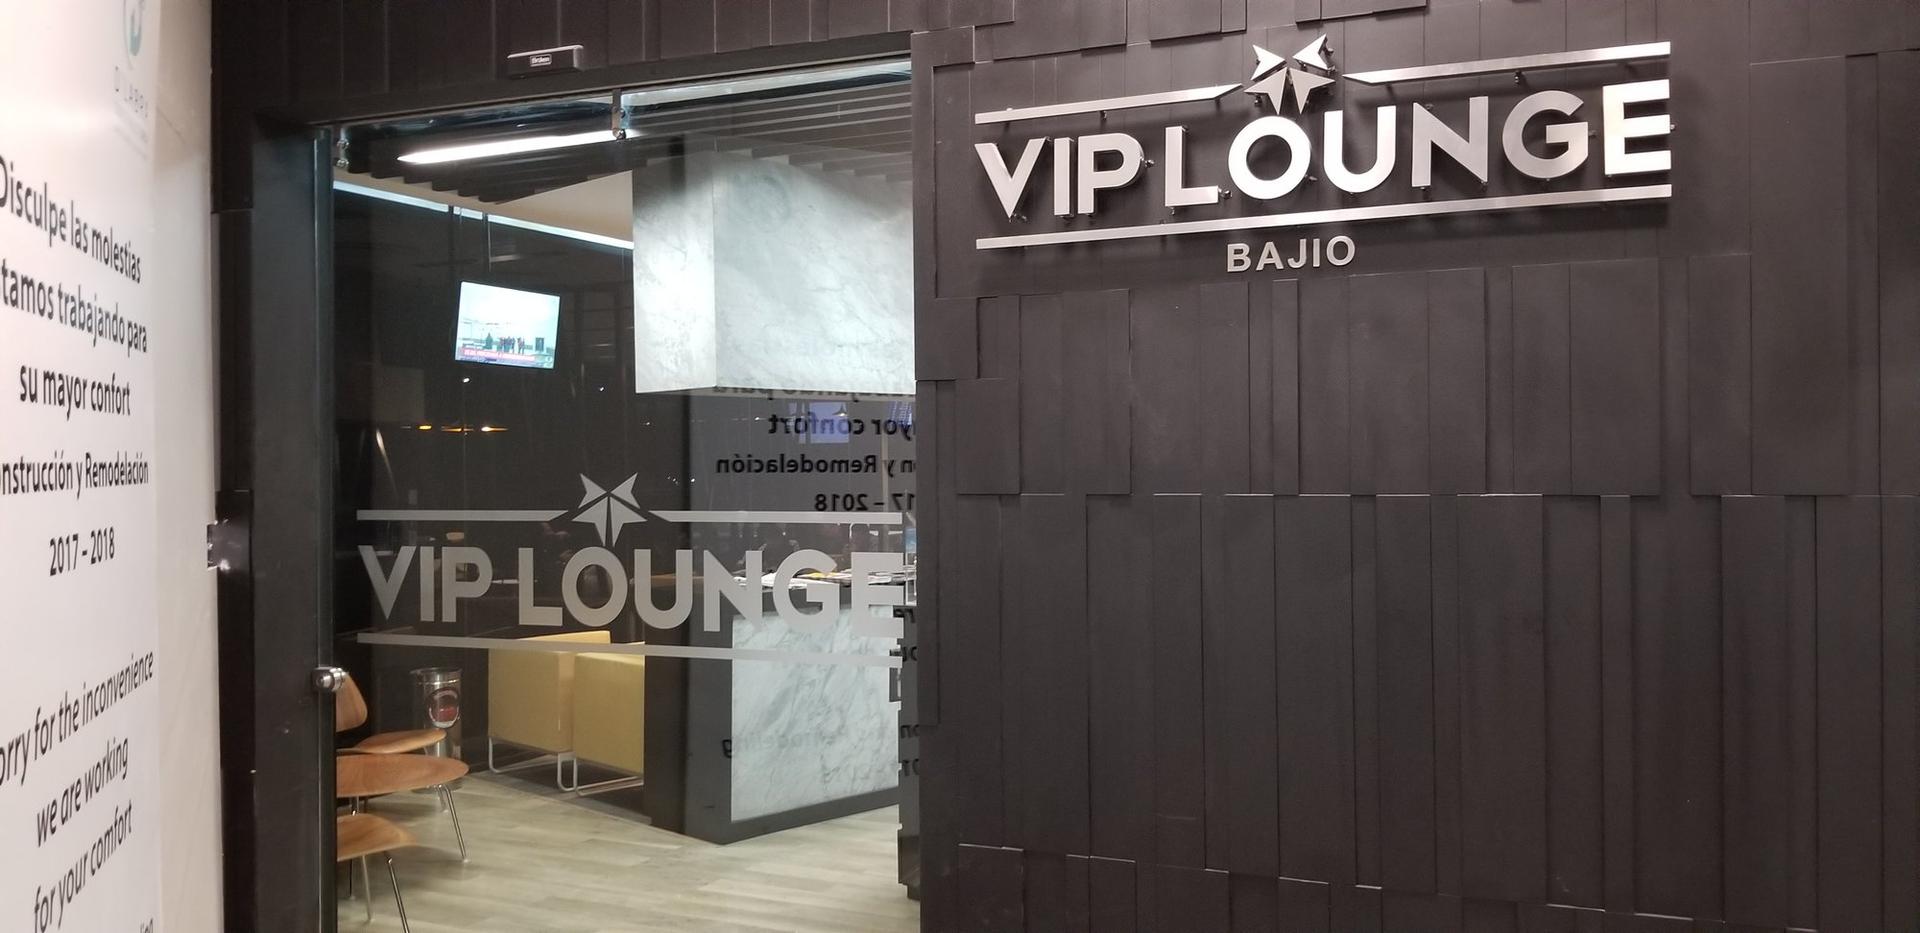 VIP Lounge Bajio image 9 of 10